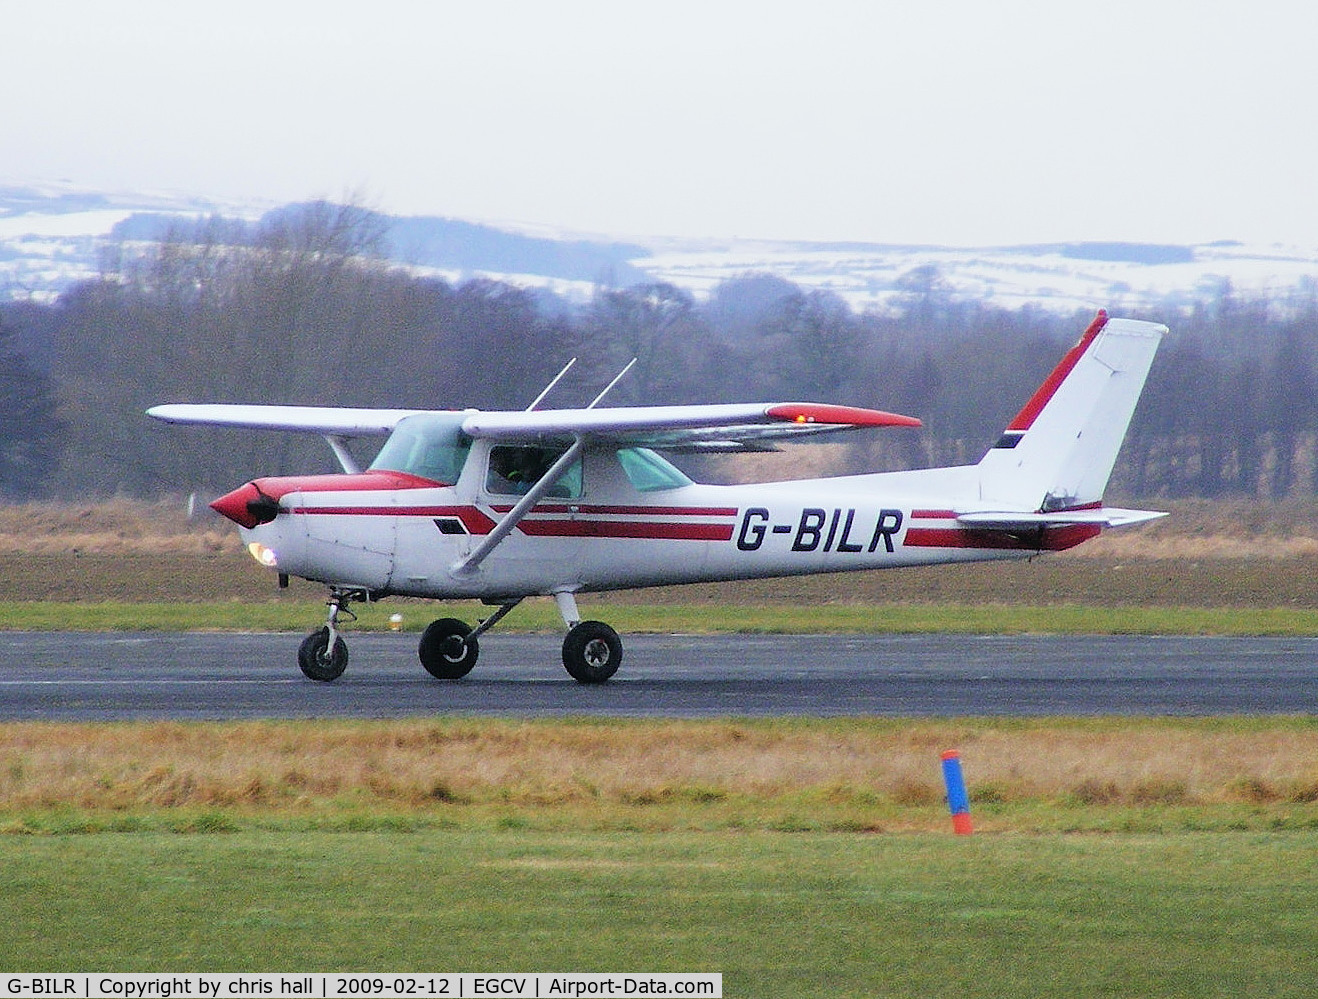 G-BILR, 1981 Cessna 152 C/N 152-84822, SHROPSHIRE AERO CLUB, Previous ID: N4822P